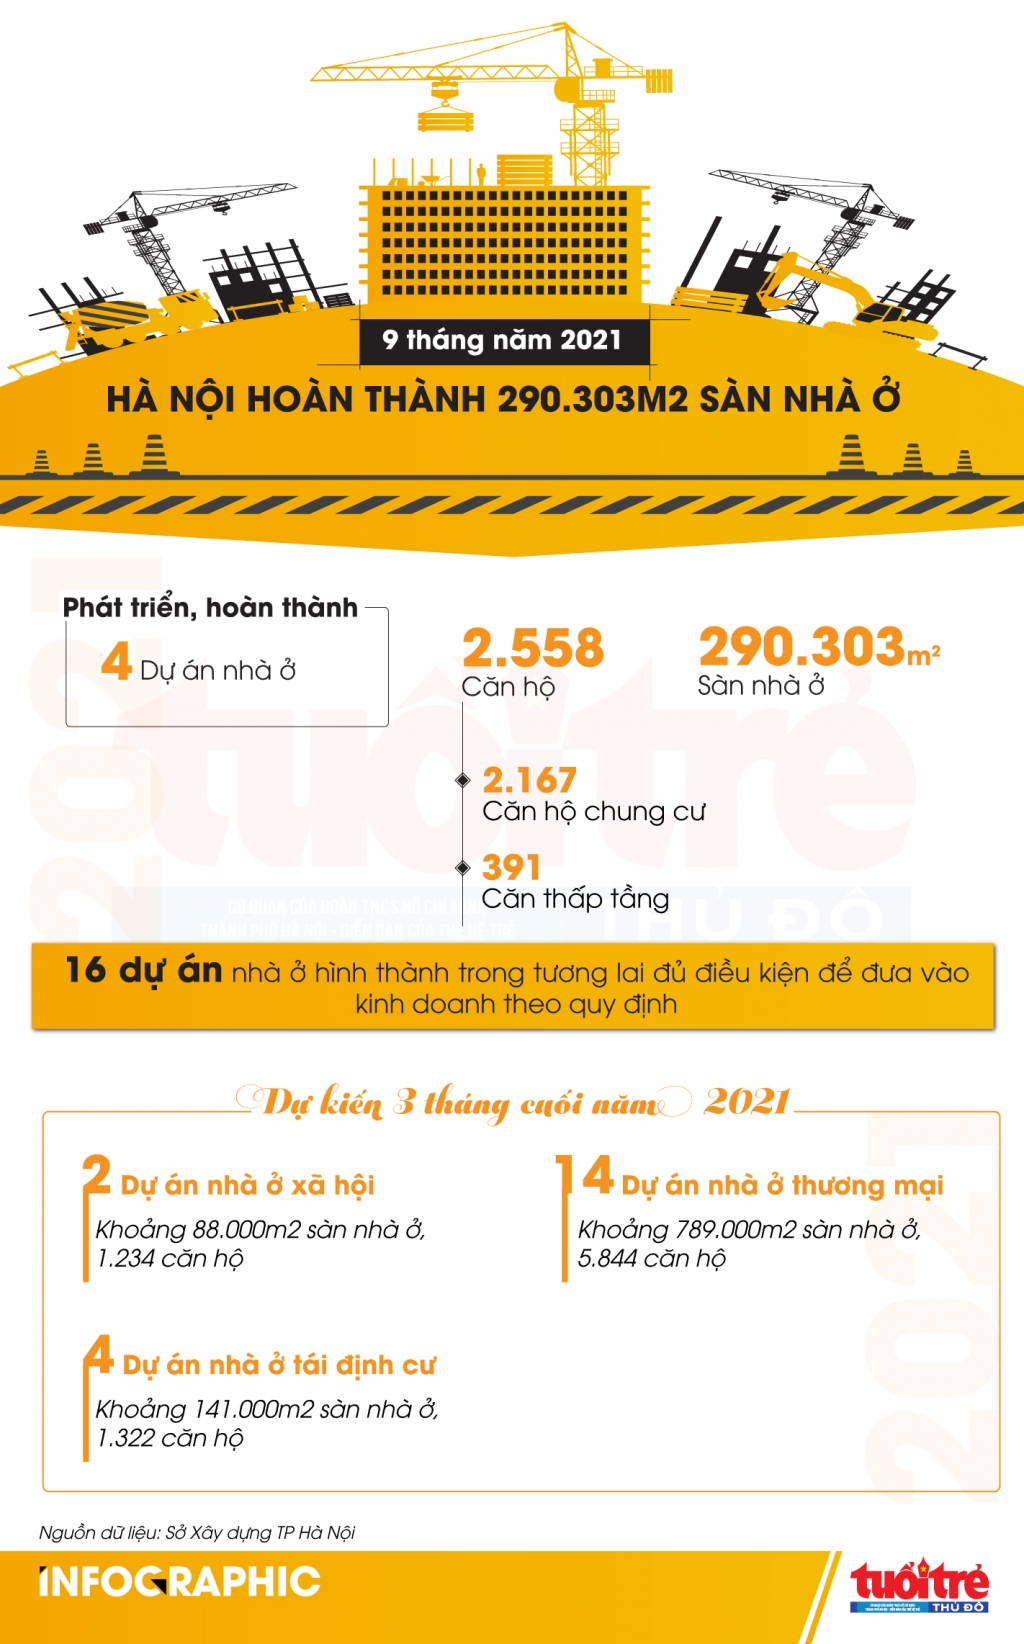 9 tháng năm 2021, Hà Nội hoàn thành 290.303m2 sàn nhà ở